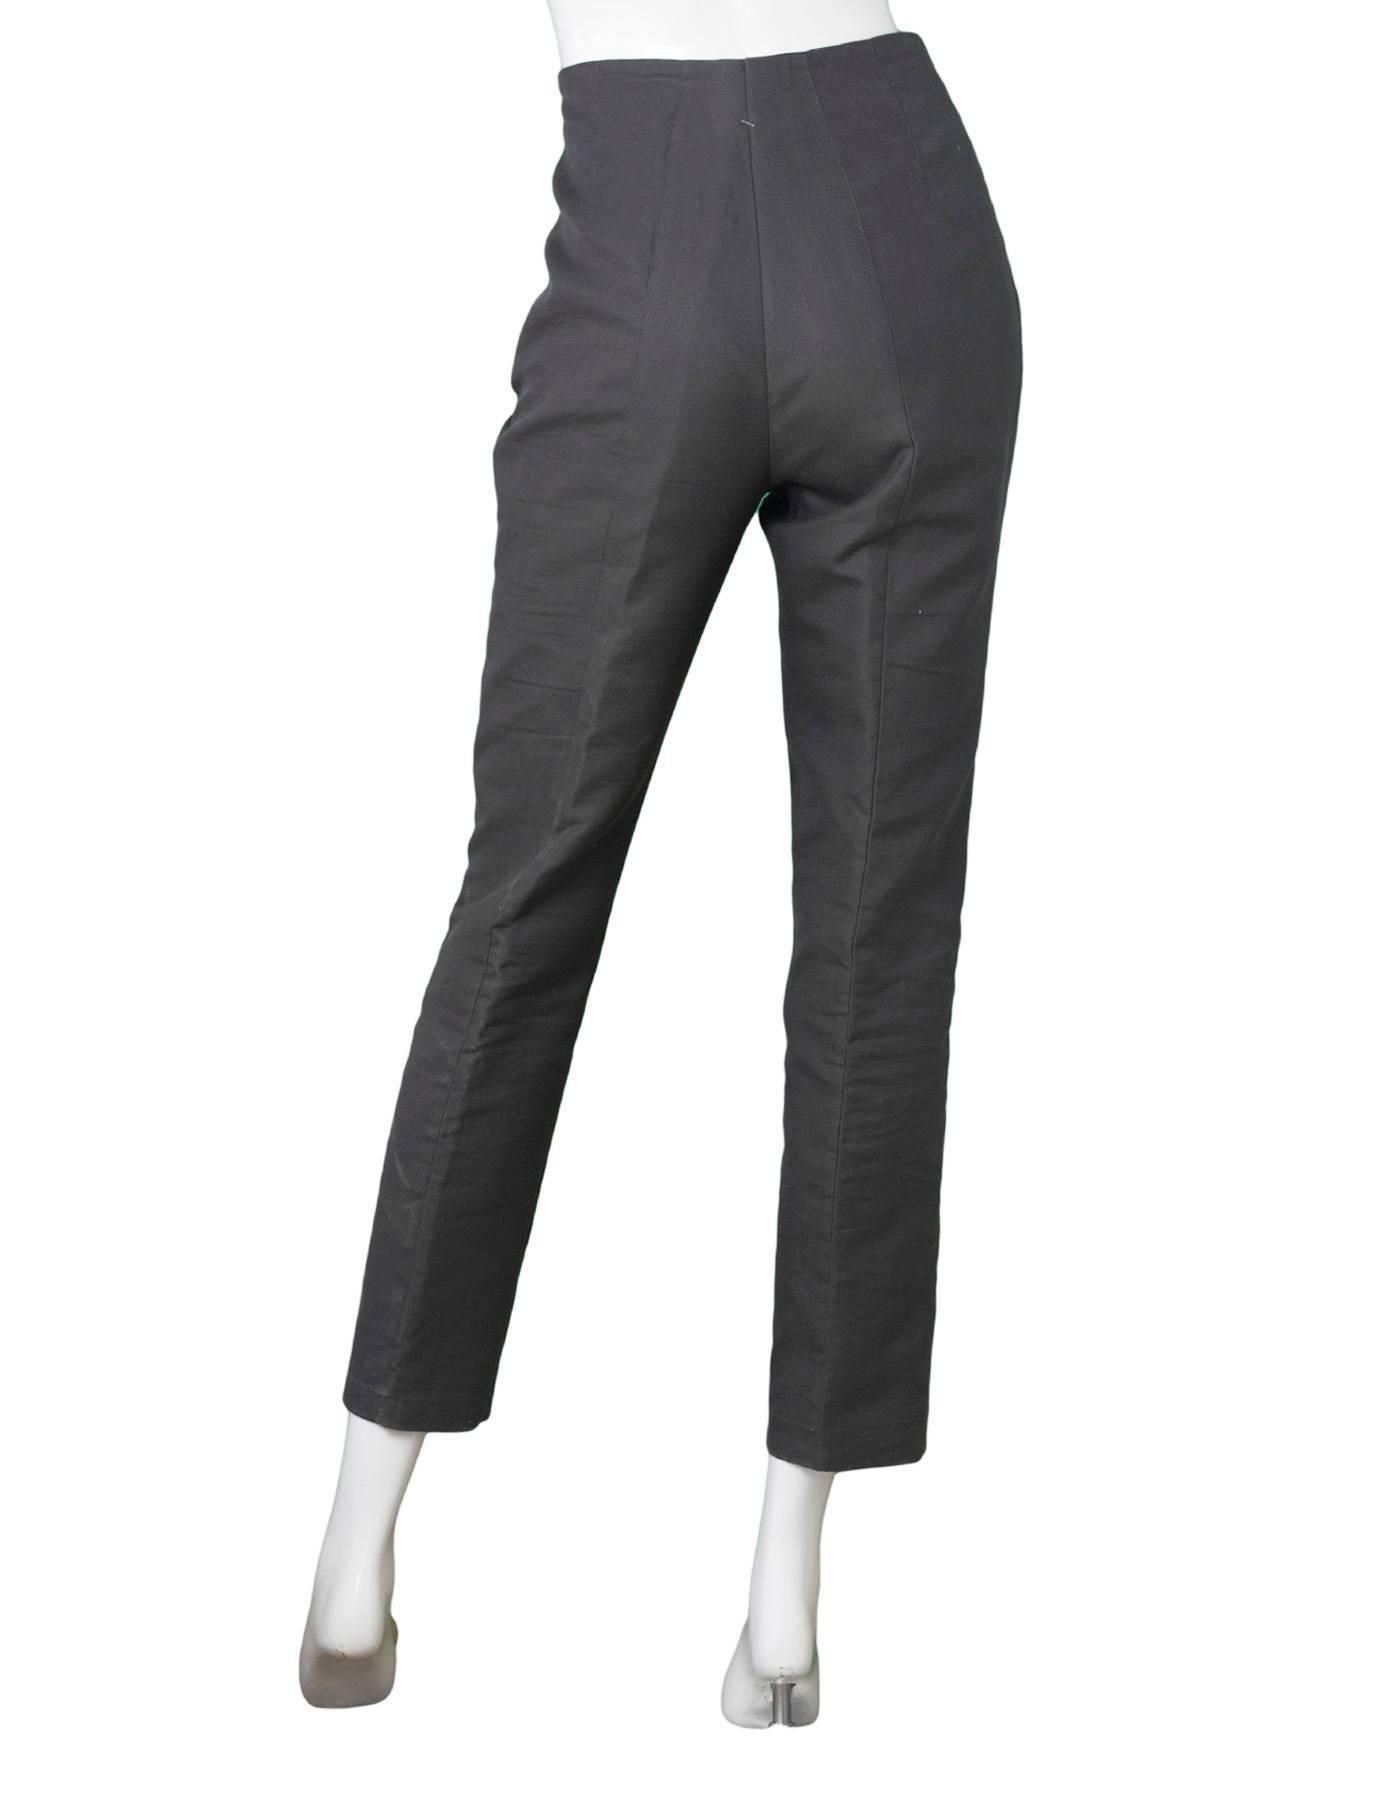 Black Akris Grey Cropped Pants Sz 8